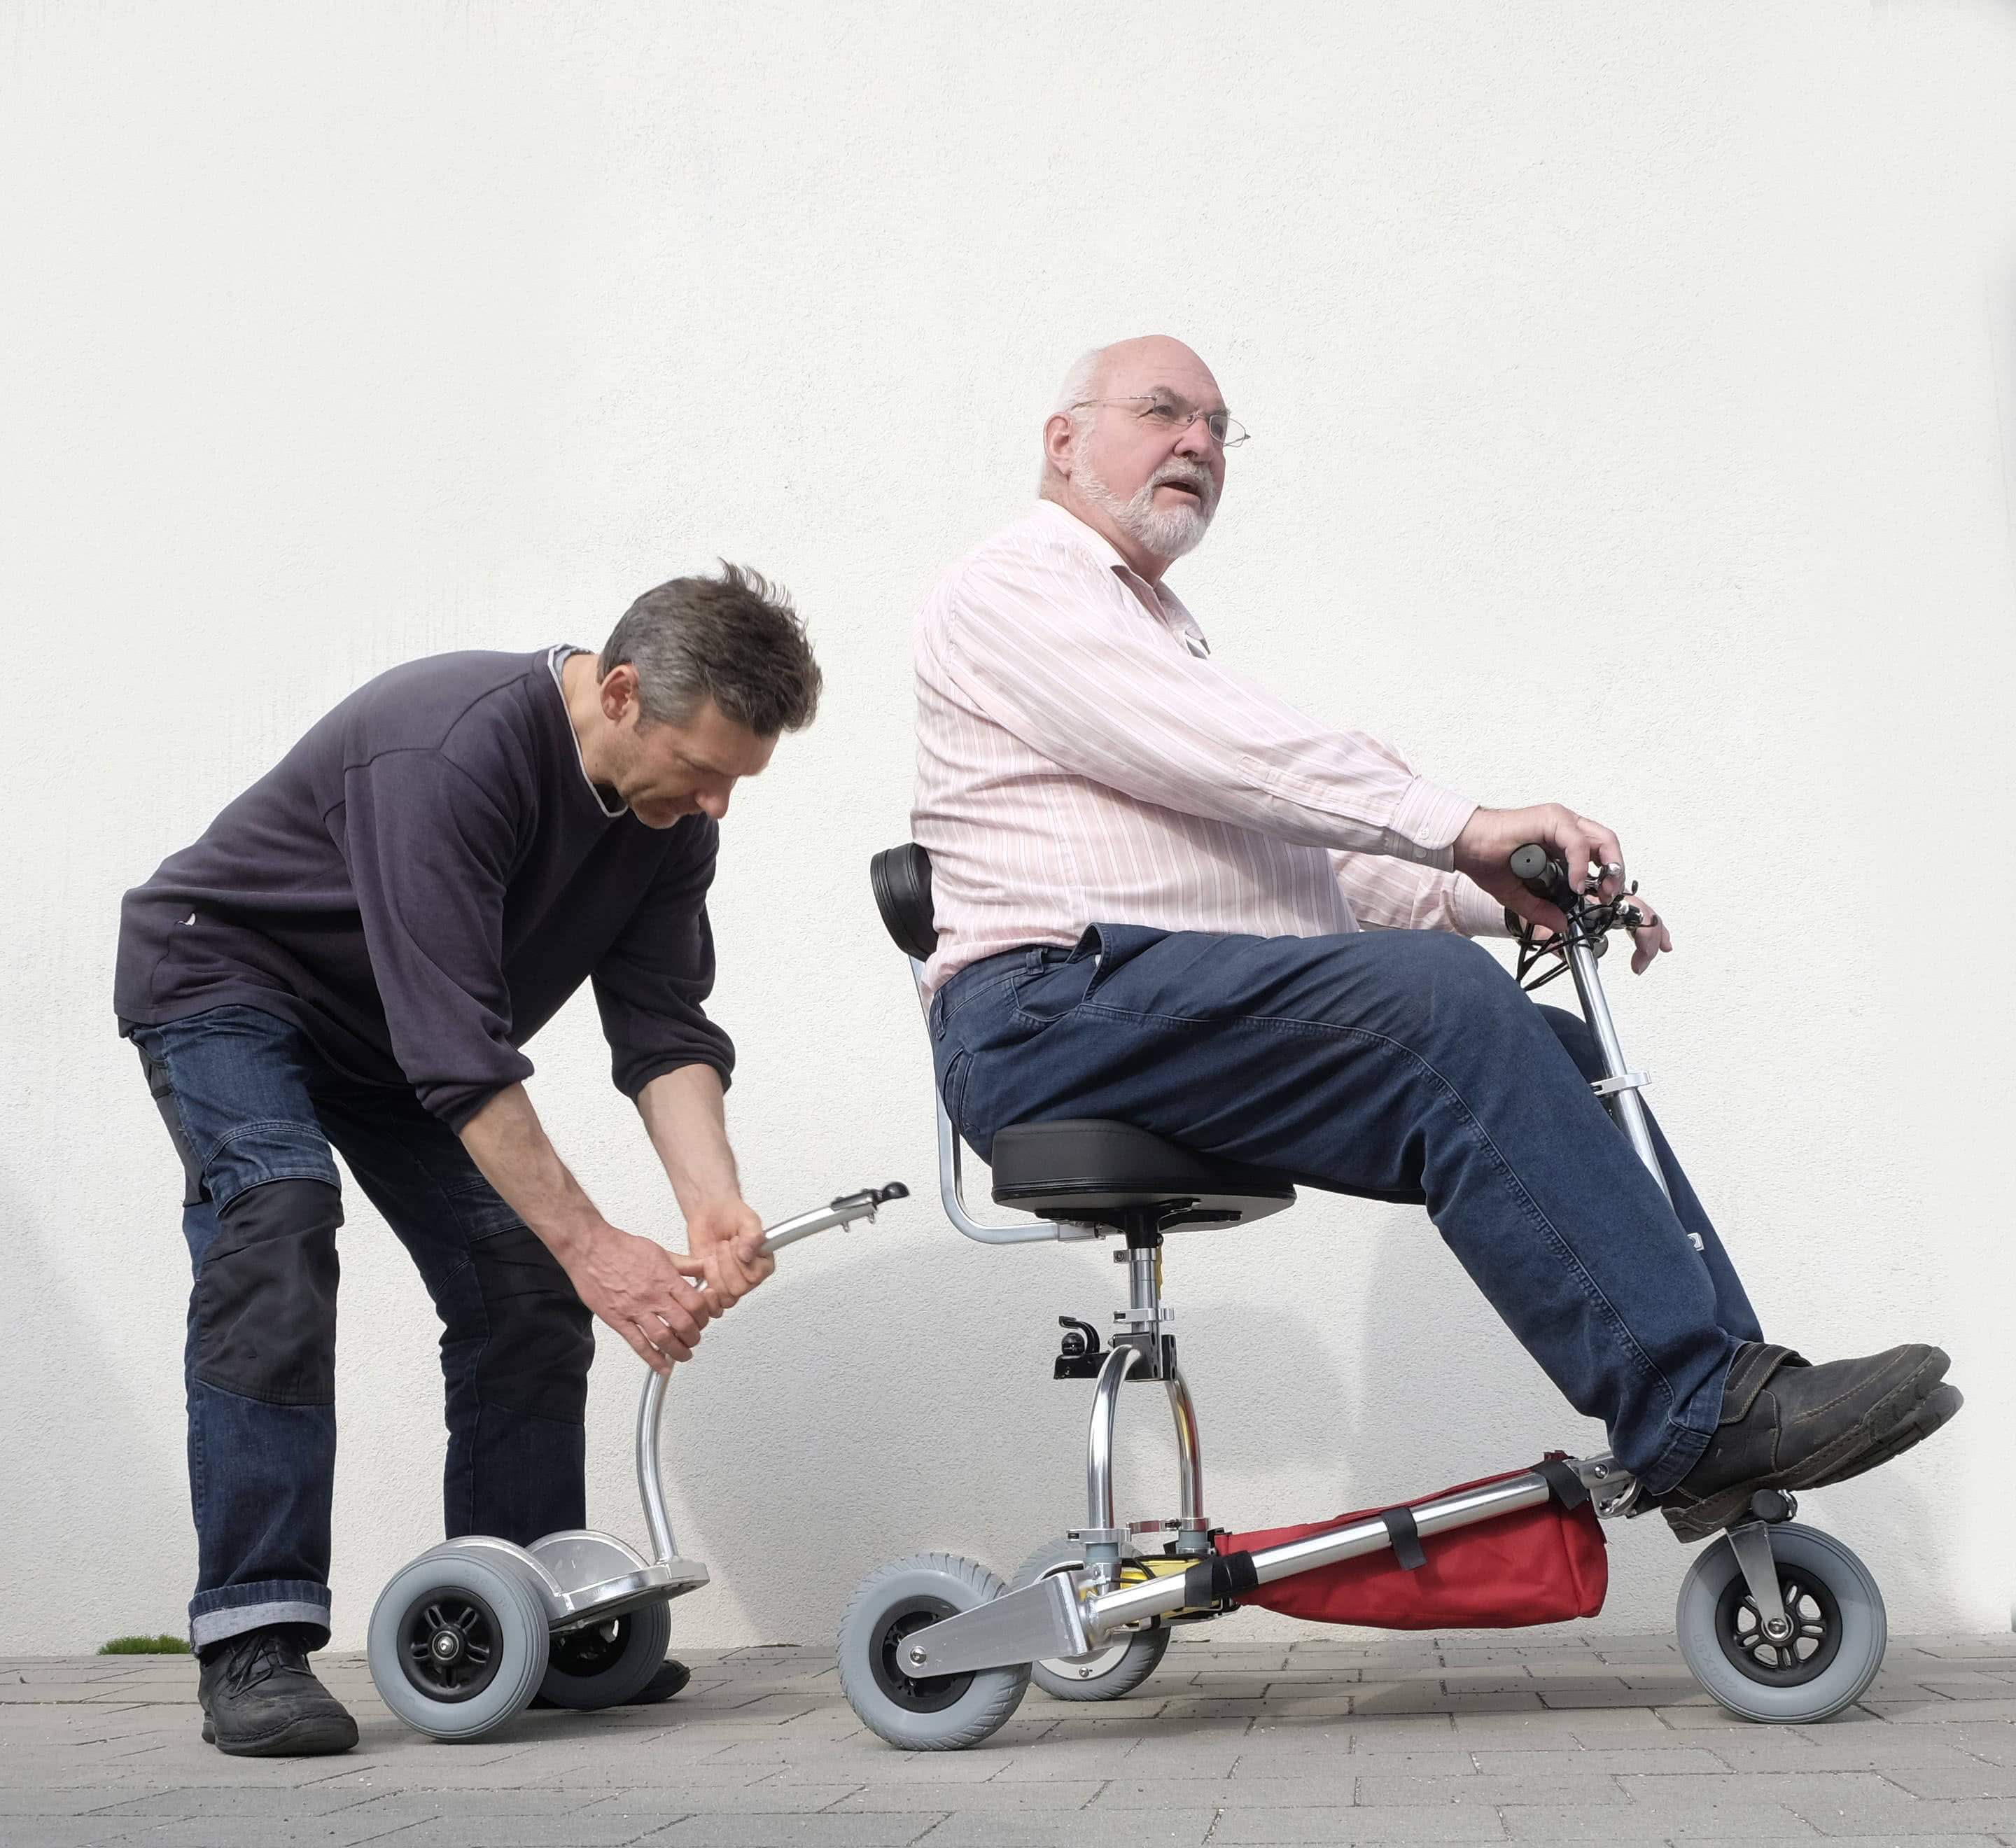 Befestigung des Mitfahrbretts am Behindertenfahrzeug